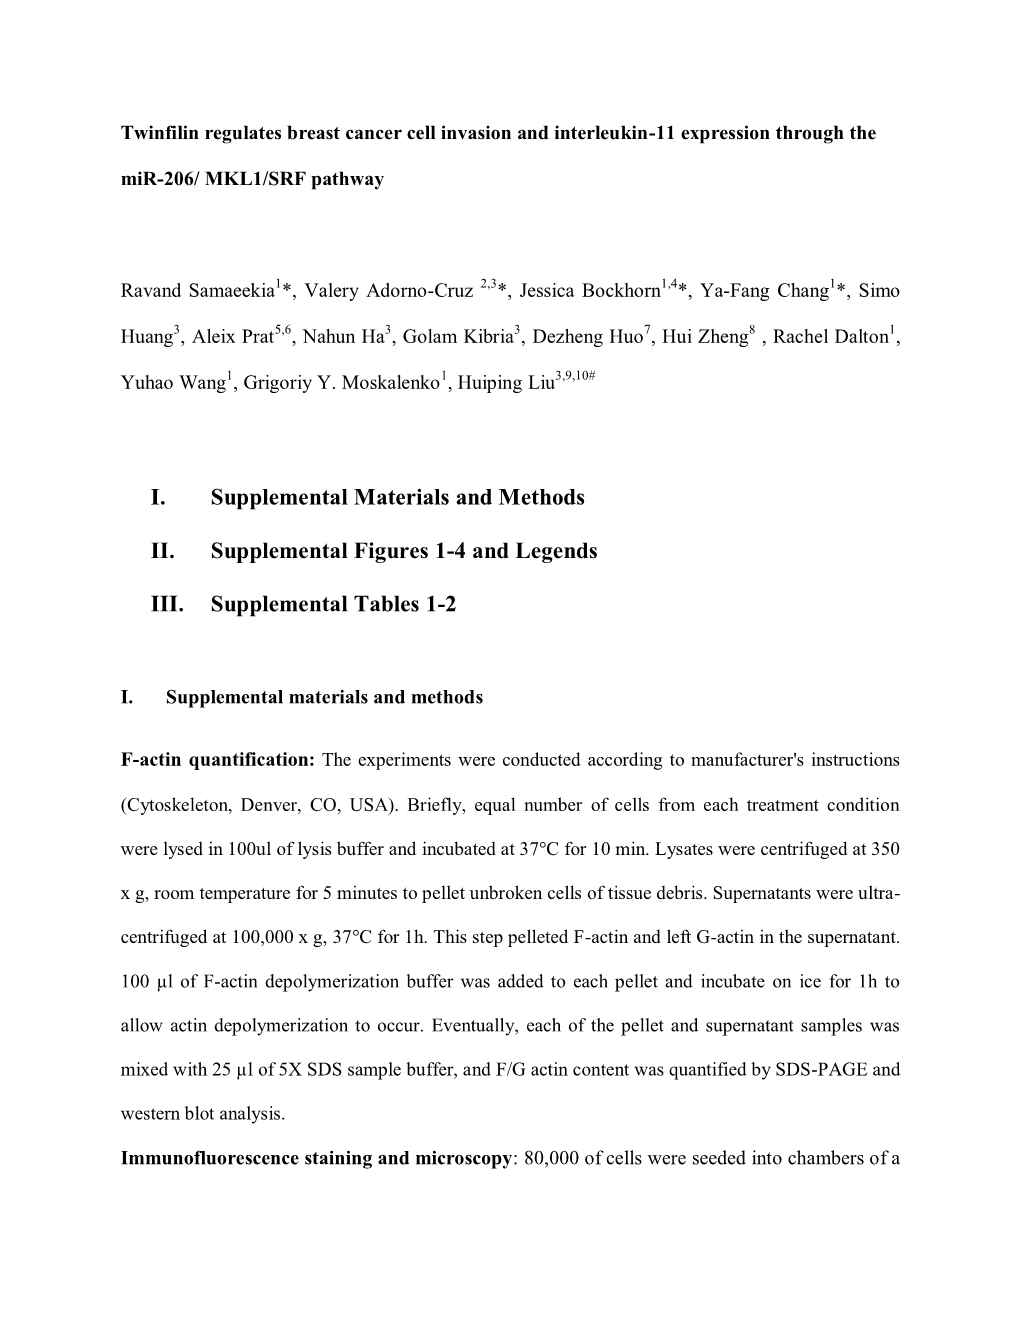 I. Supplemental Materials and Methods II. Supplemental Figures 1